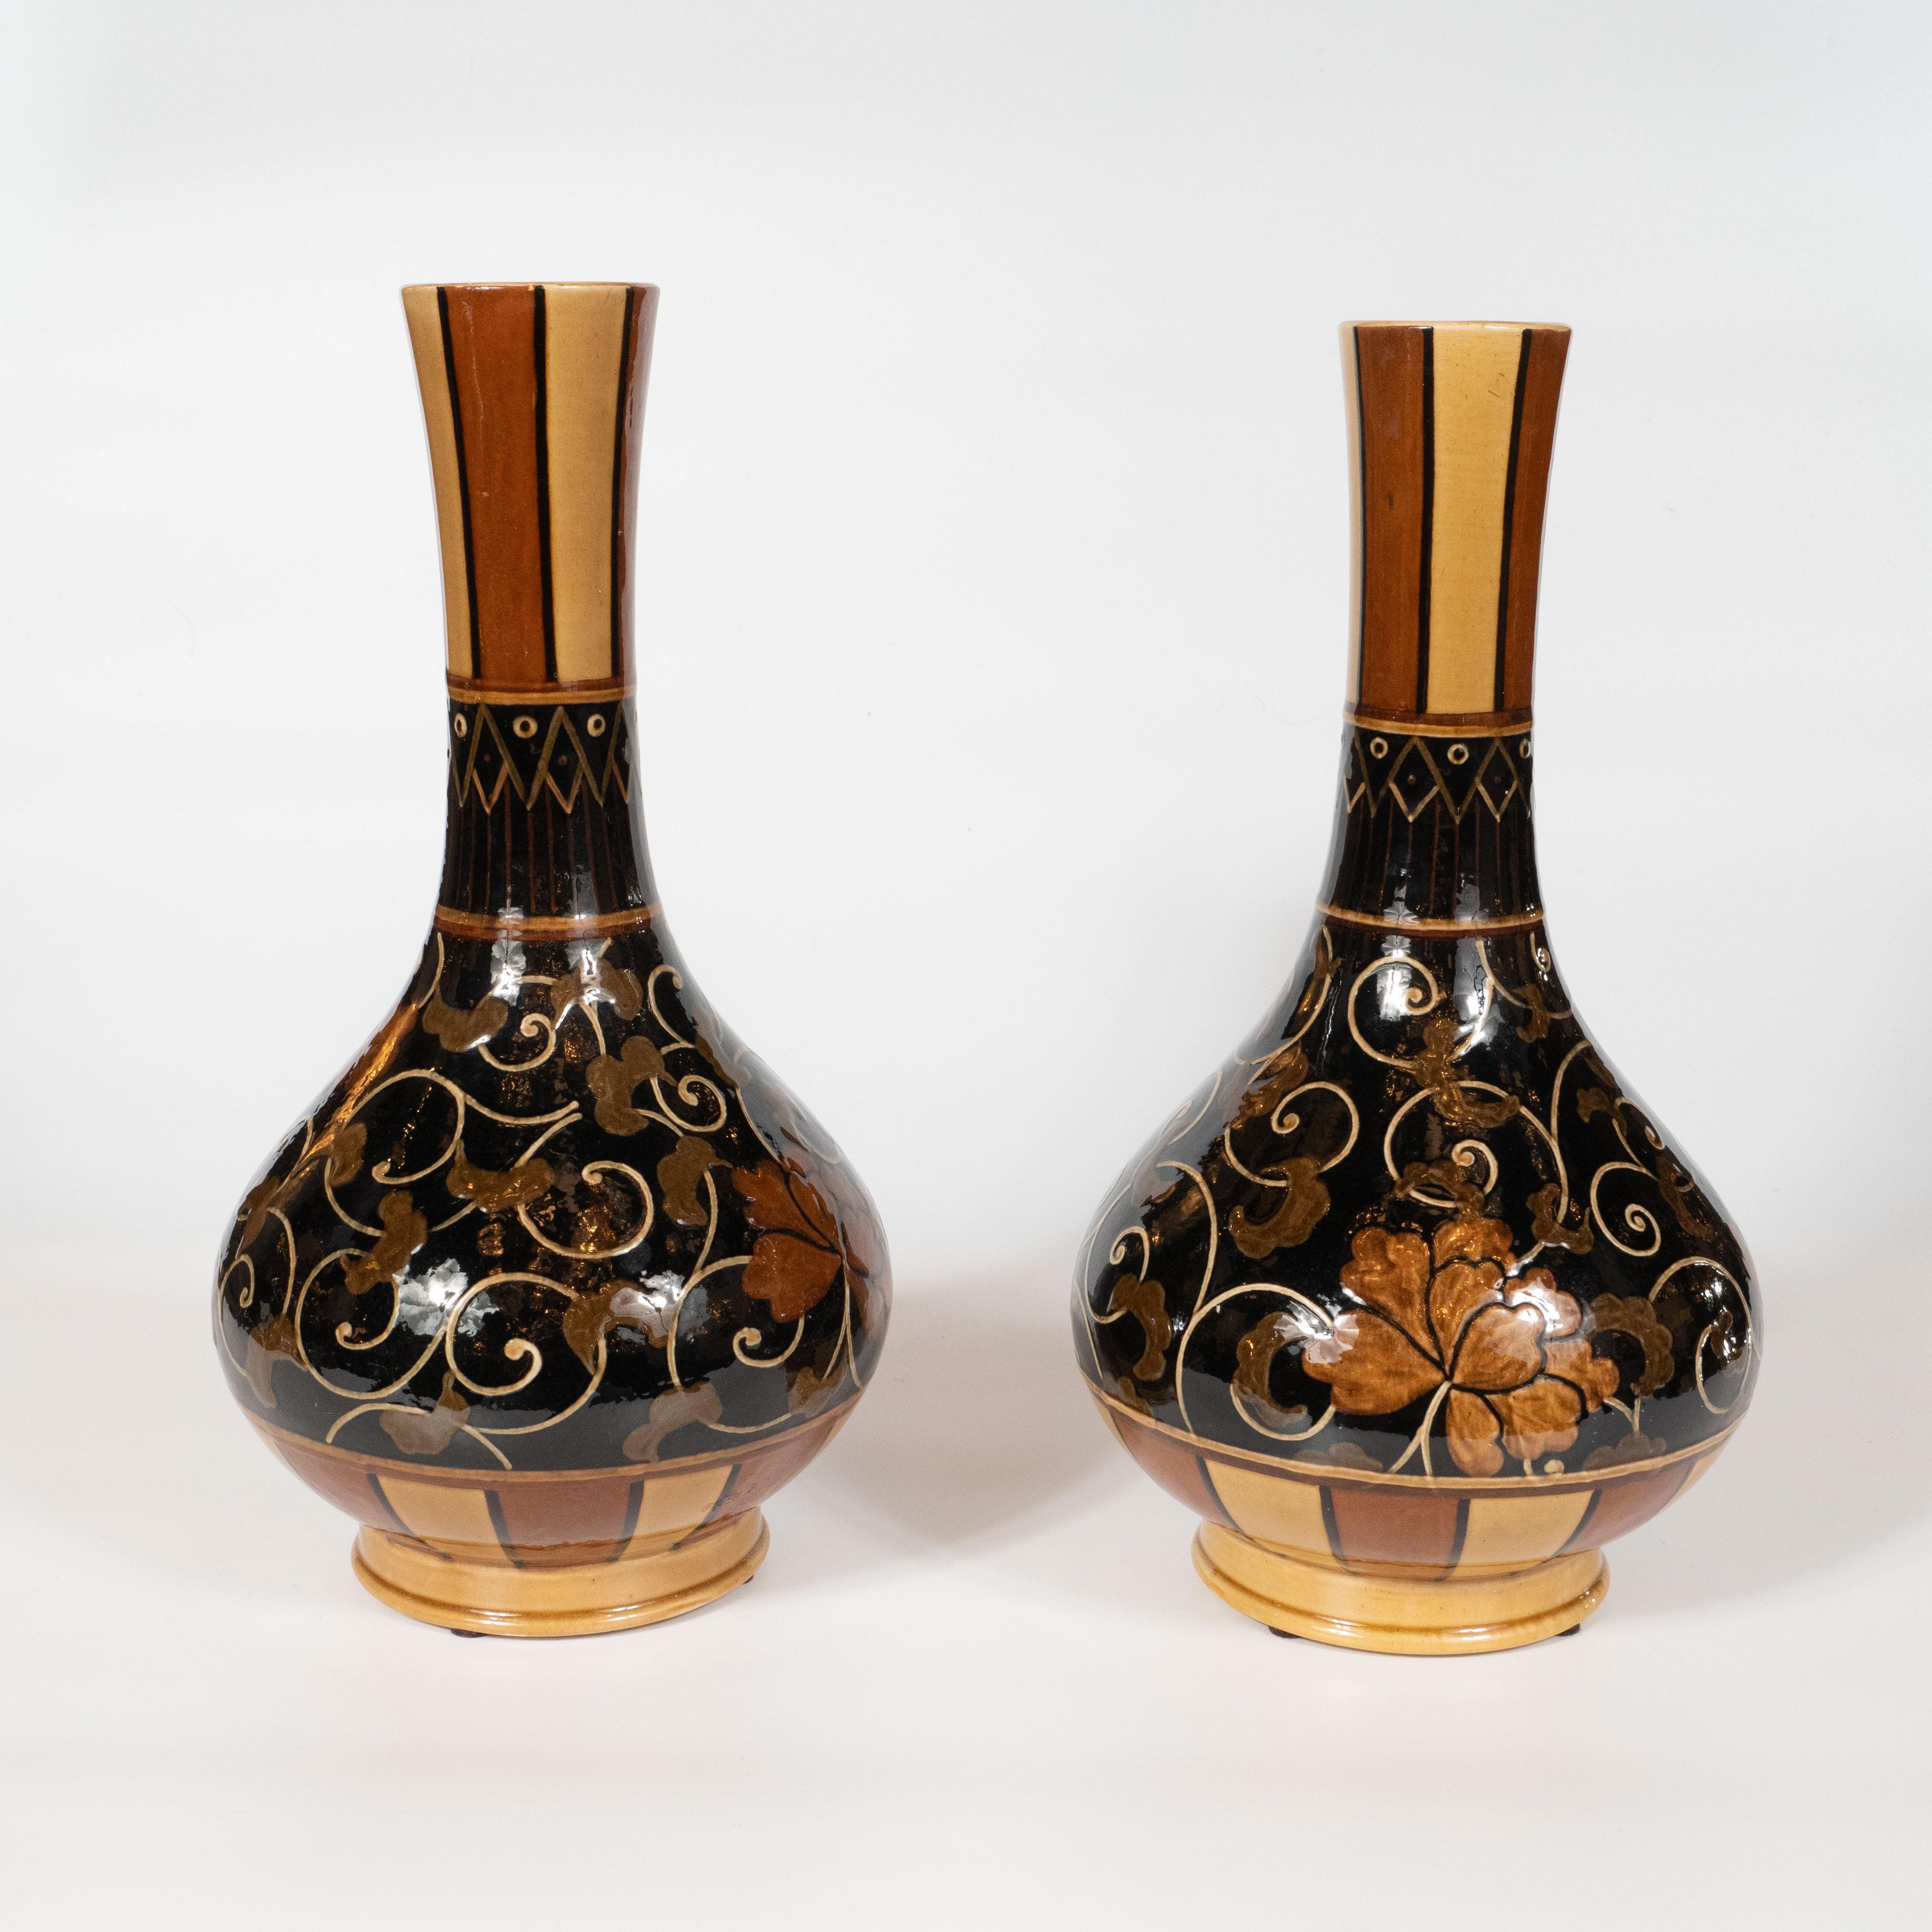 Ceramic Pair of Art Nouveau 19th Century Wedgewood Marsden Vases with Foliate Designs